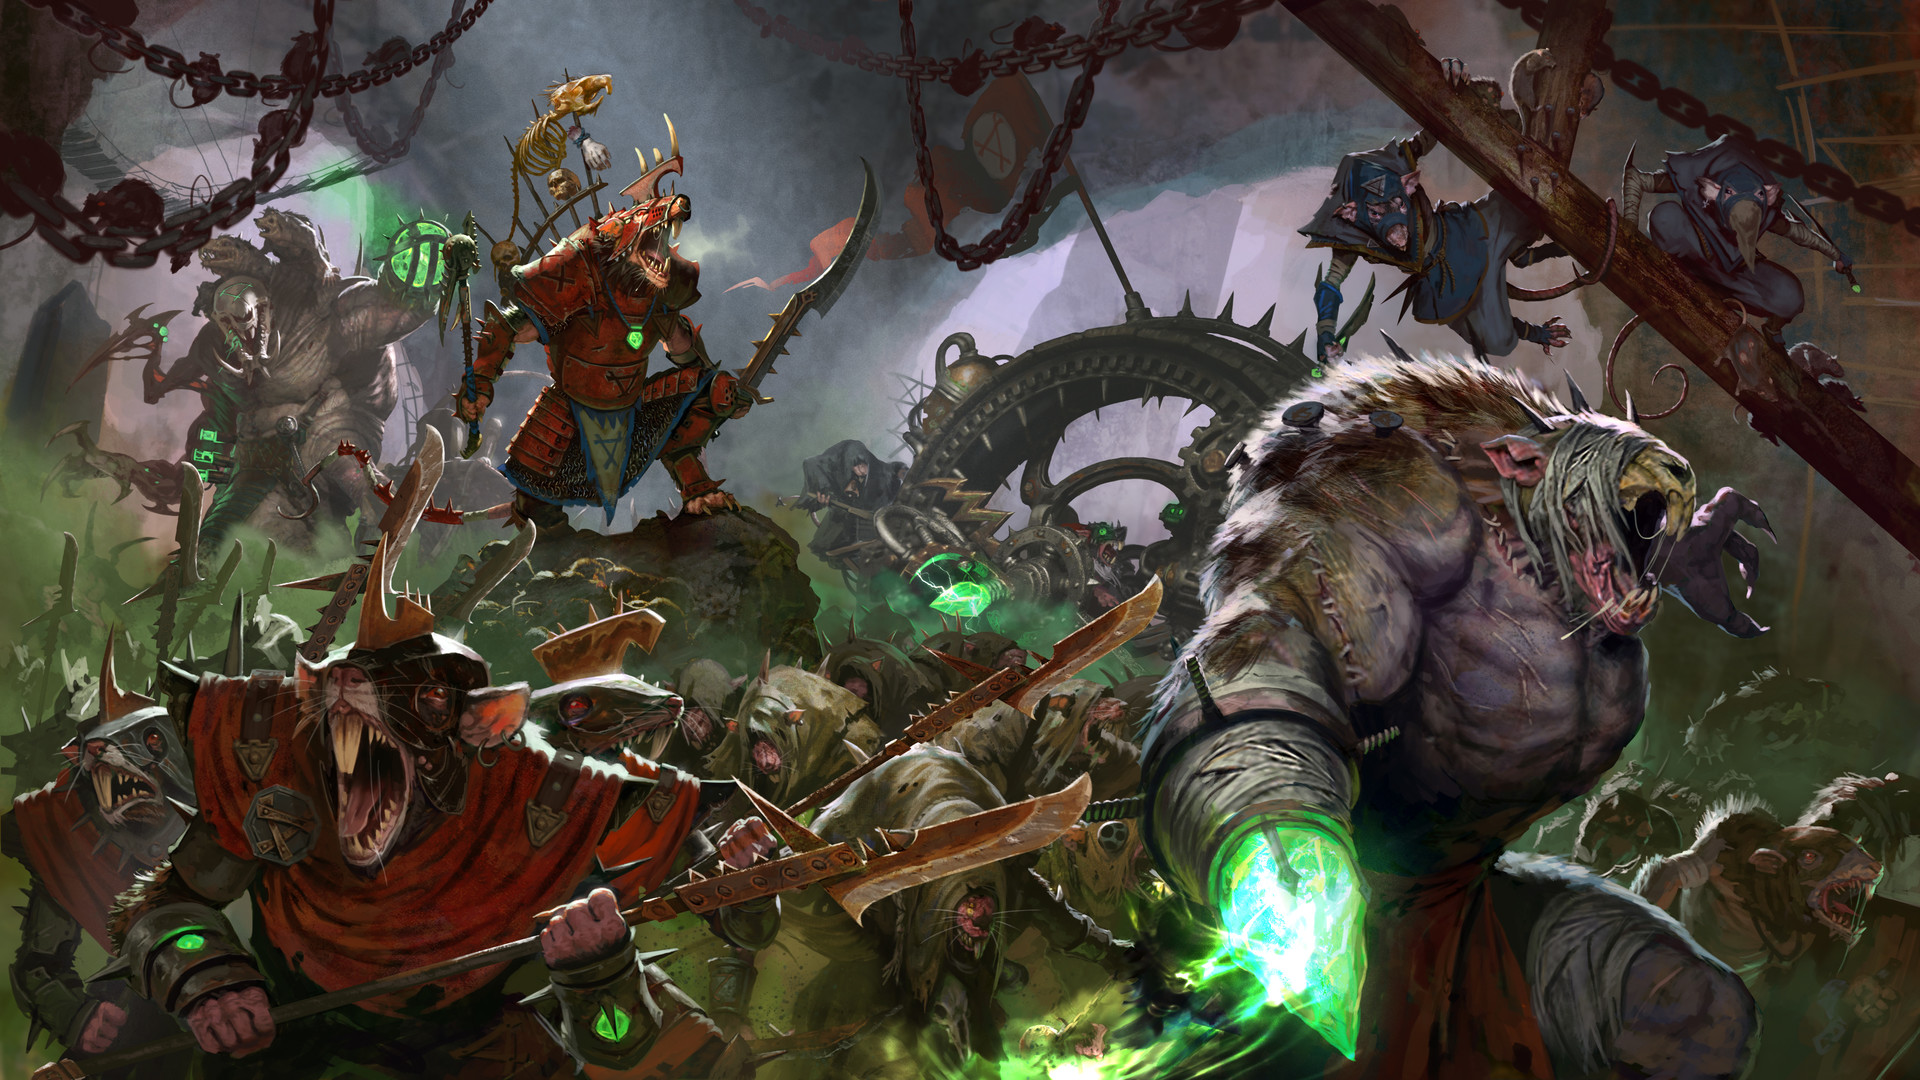 General 1920x1080 Total War: Warhammer II Warhammer fantasy art Warhammer Fantasy Skaven